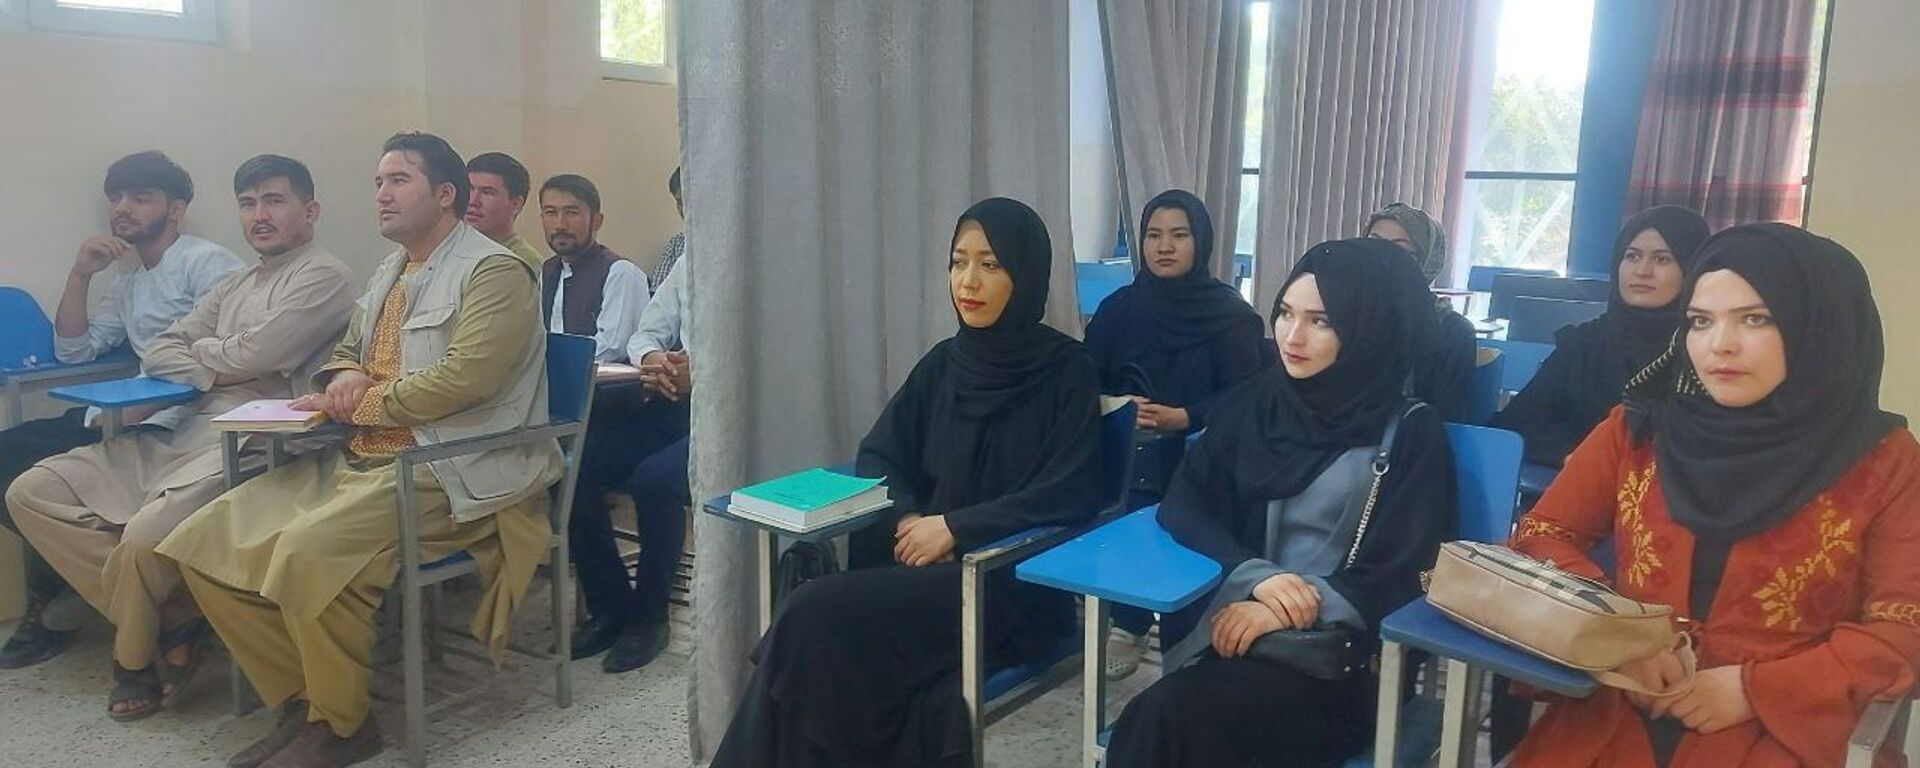 Студенты во время урока в университете Avicenna в Кабуле  - Sputnik Таджикистан, 1920, 07.09.2021